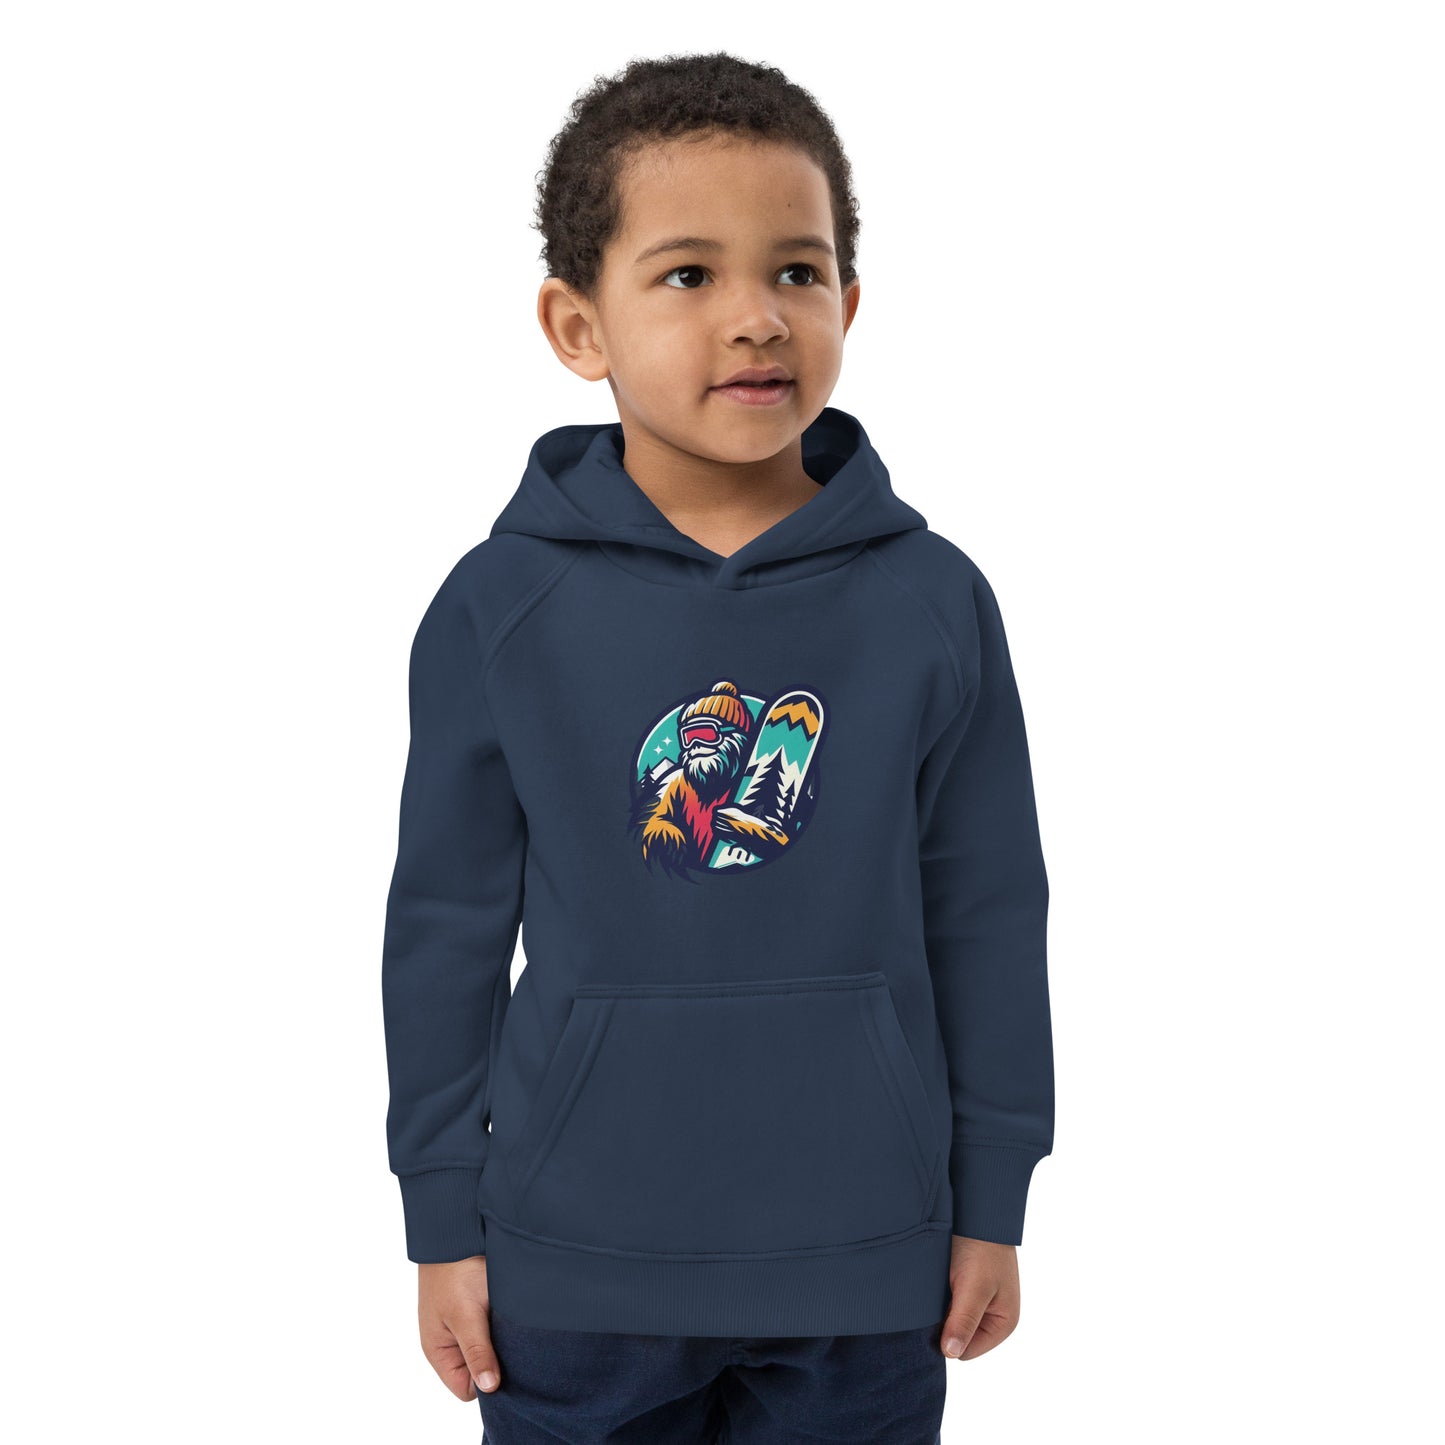 Kids eco hoodie